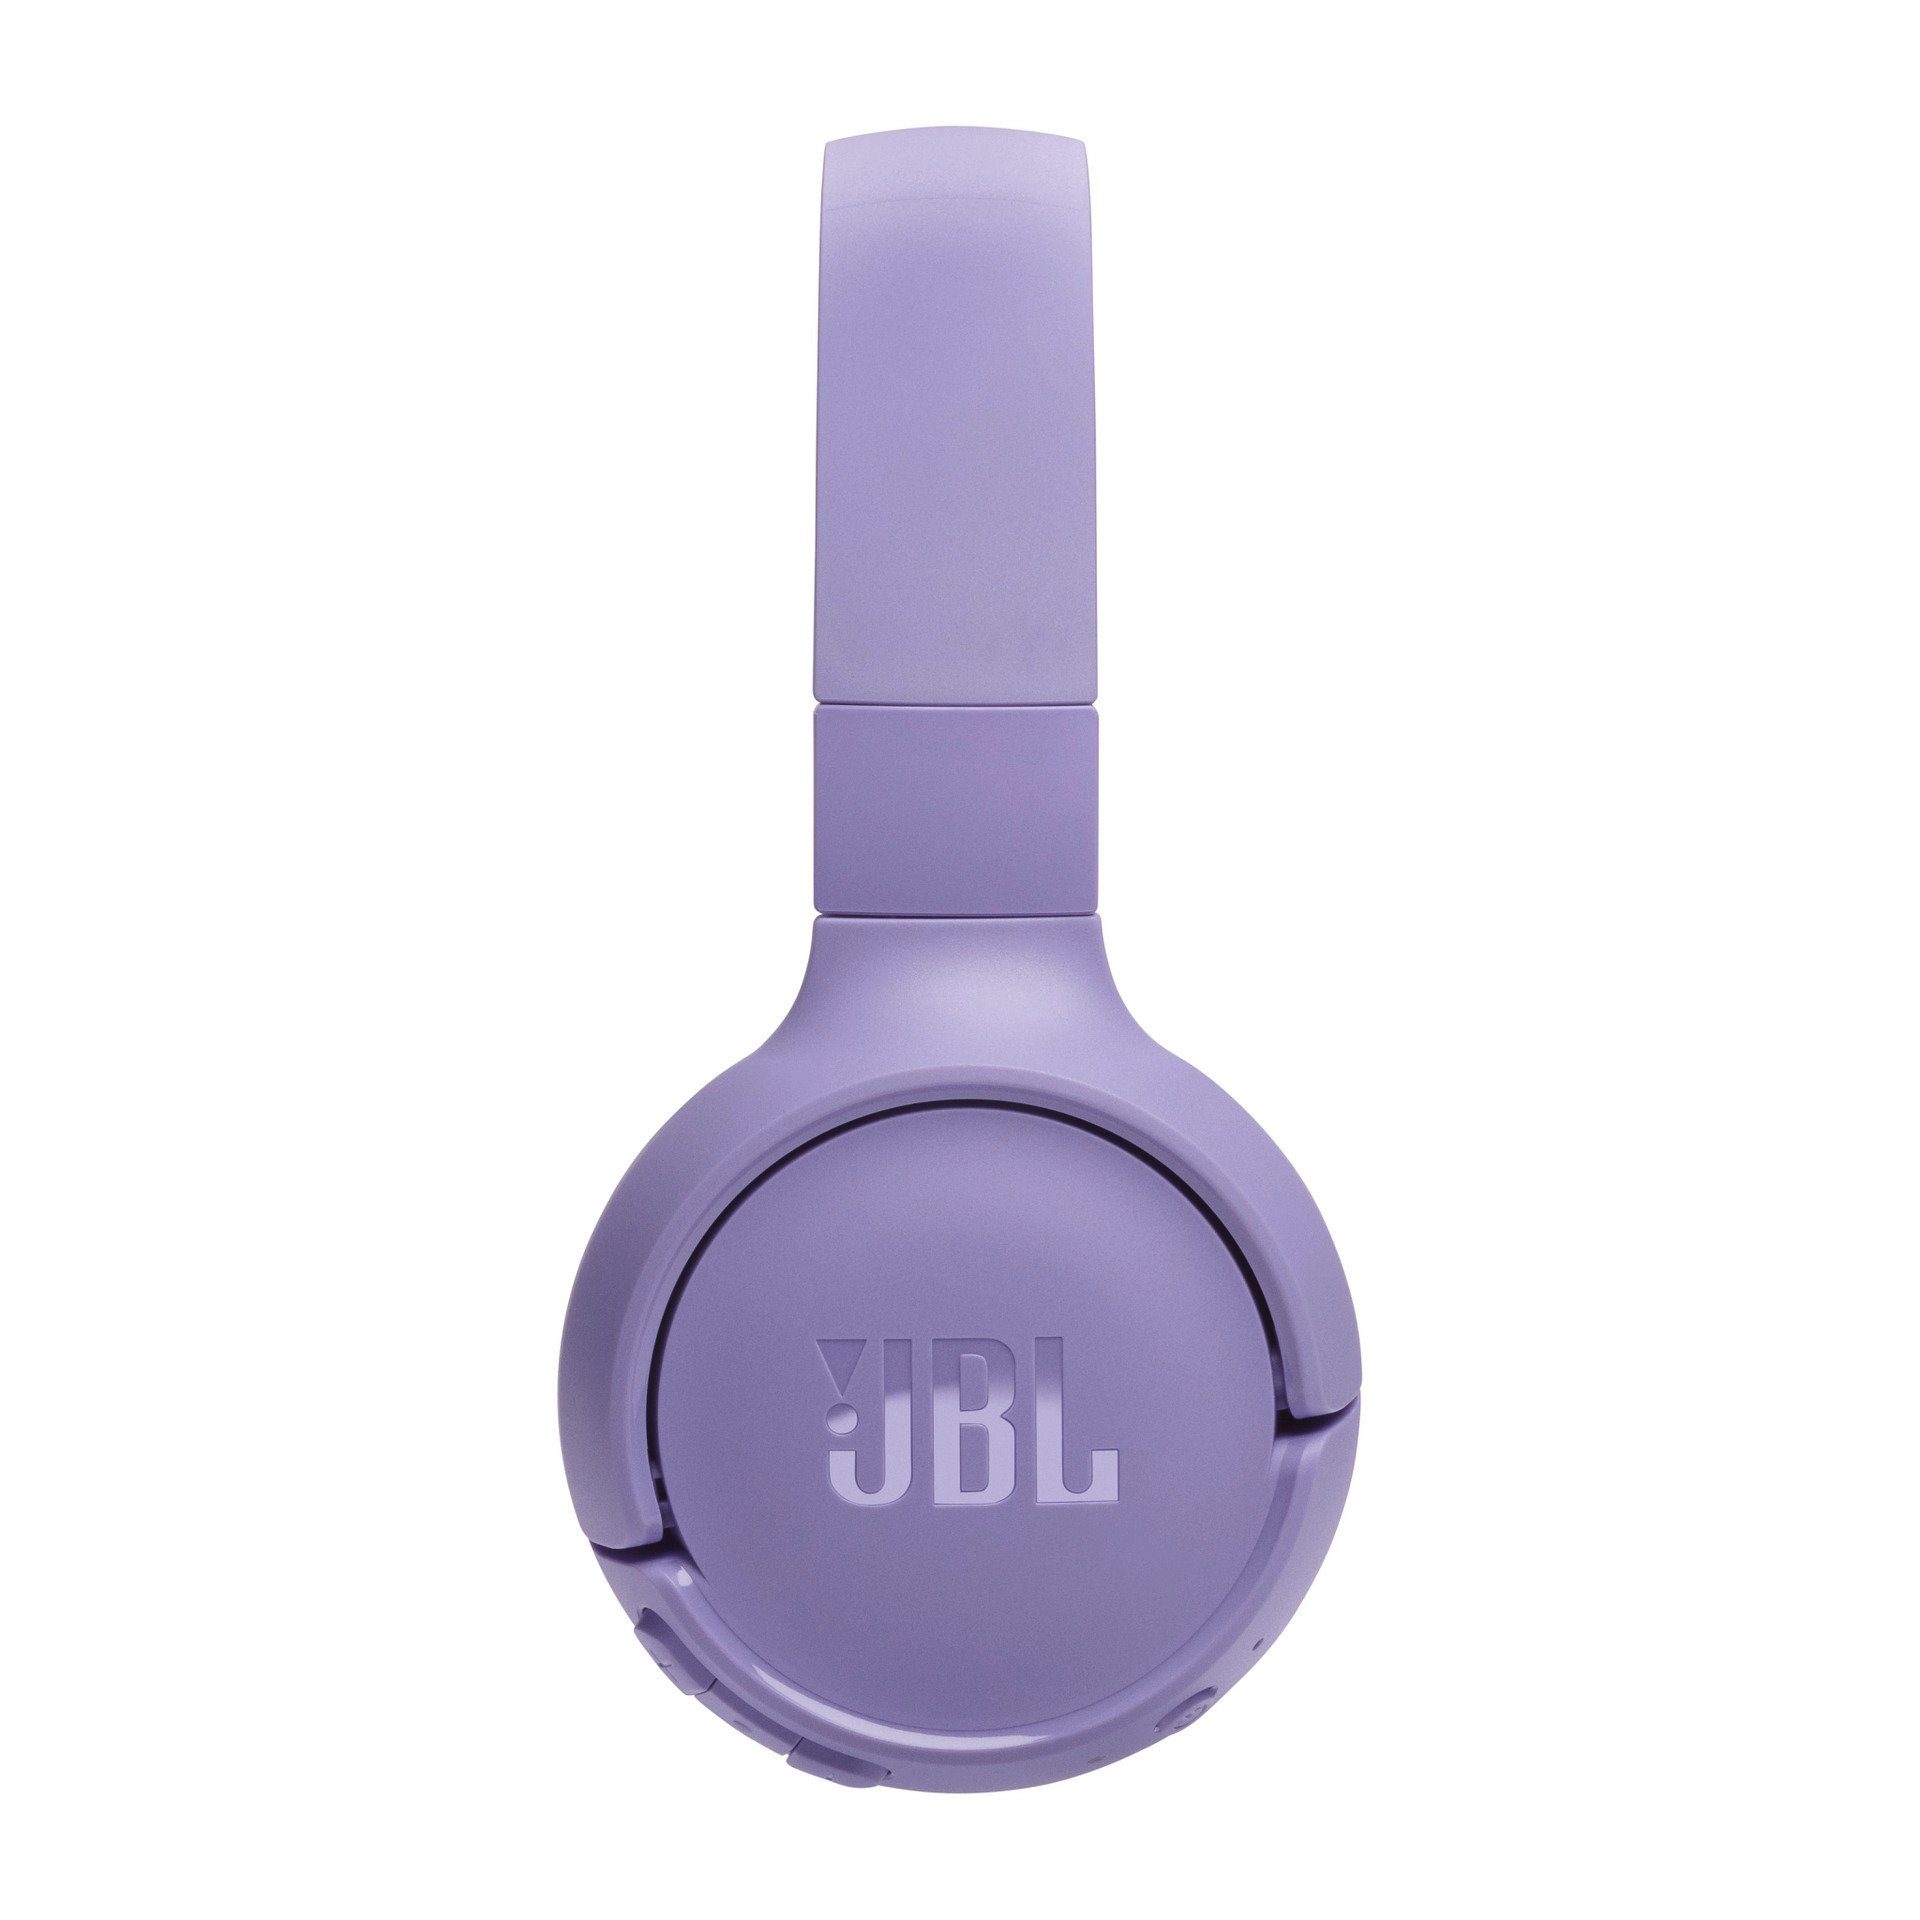 Tune BT JBL Lila Over-Ear-Kopfhörer 520